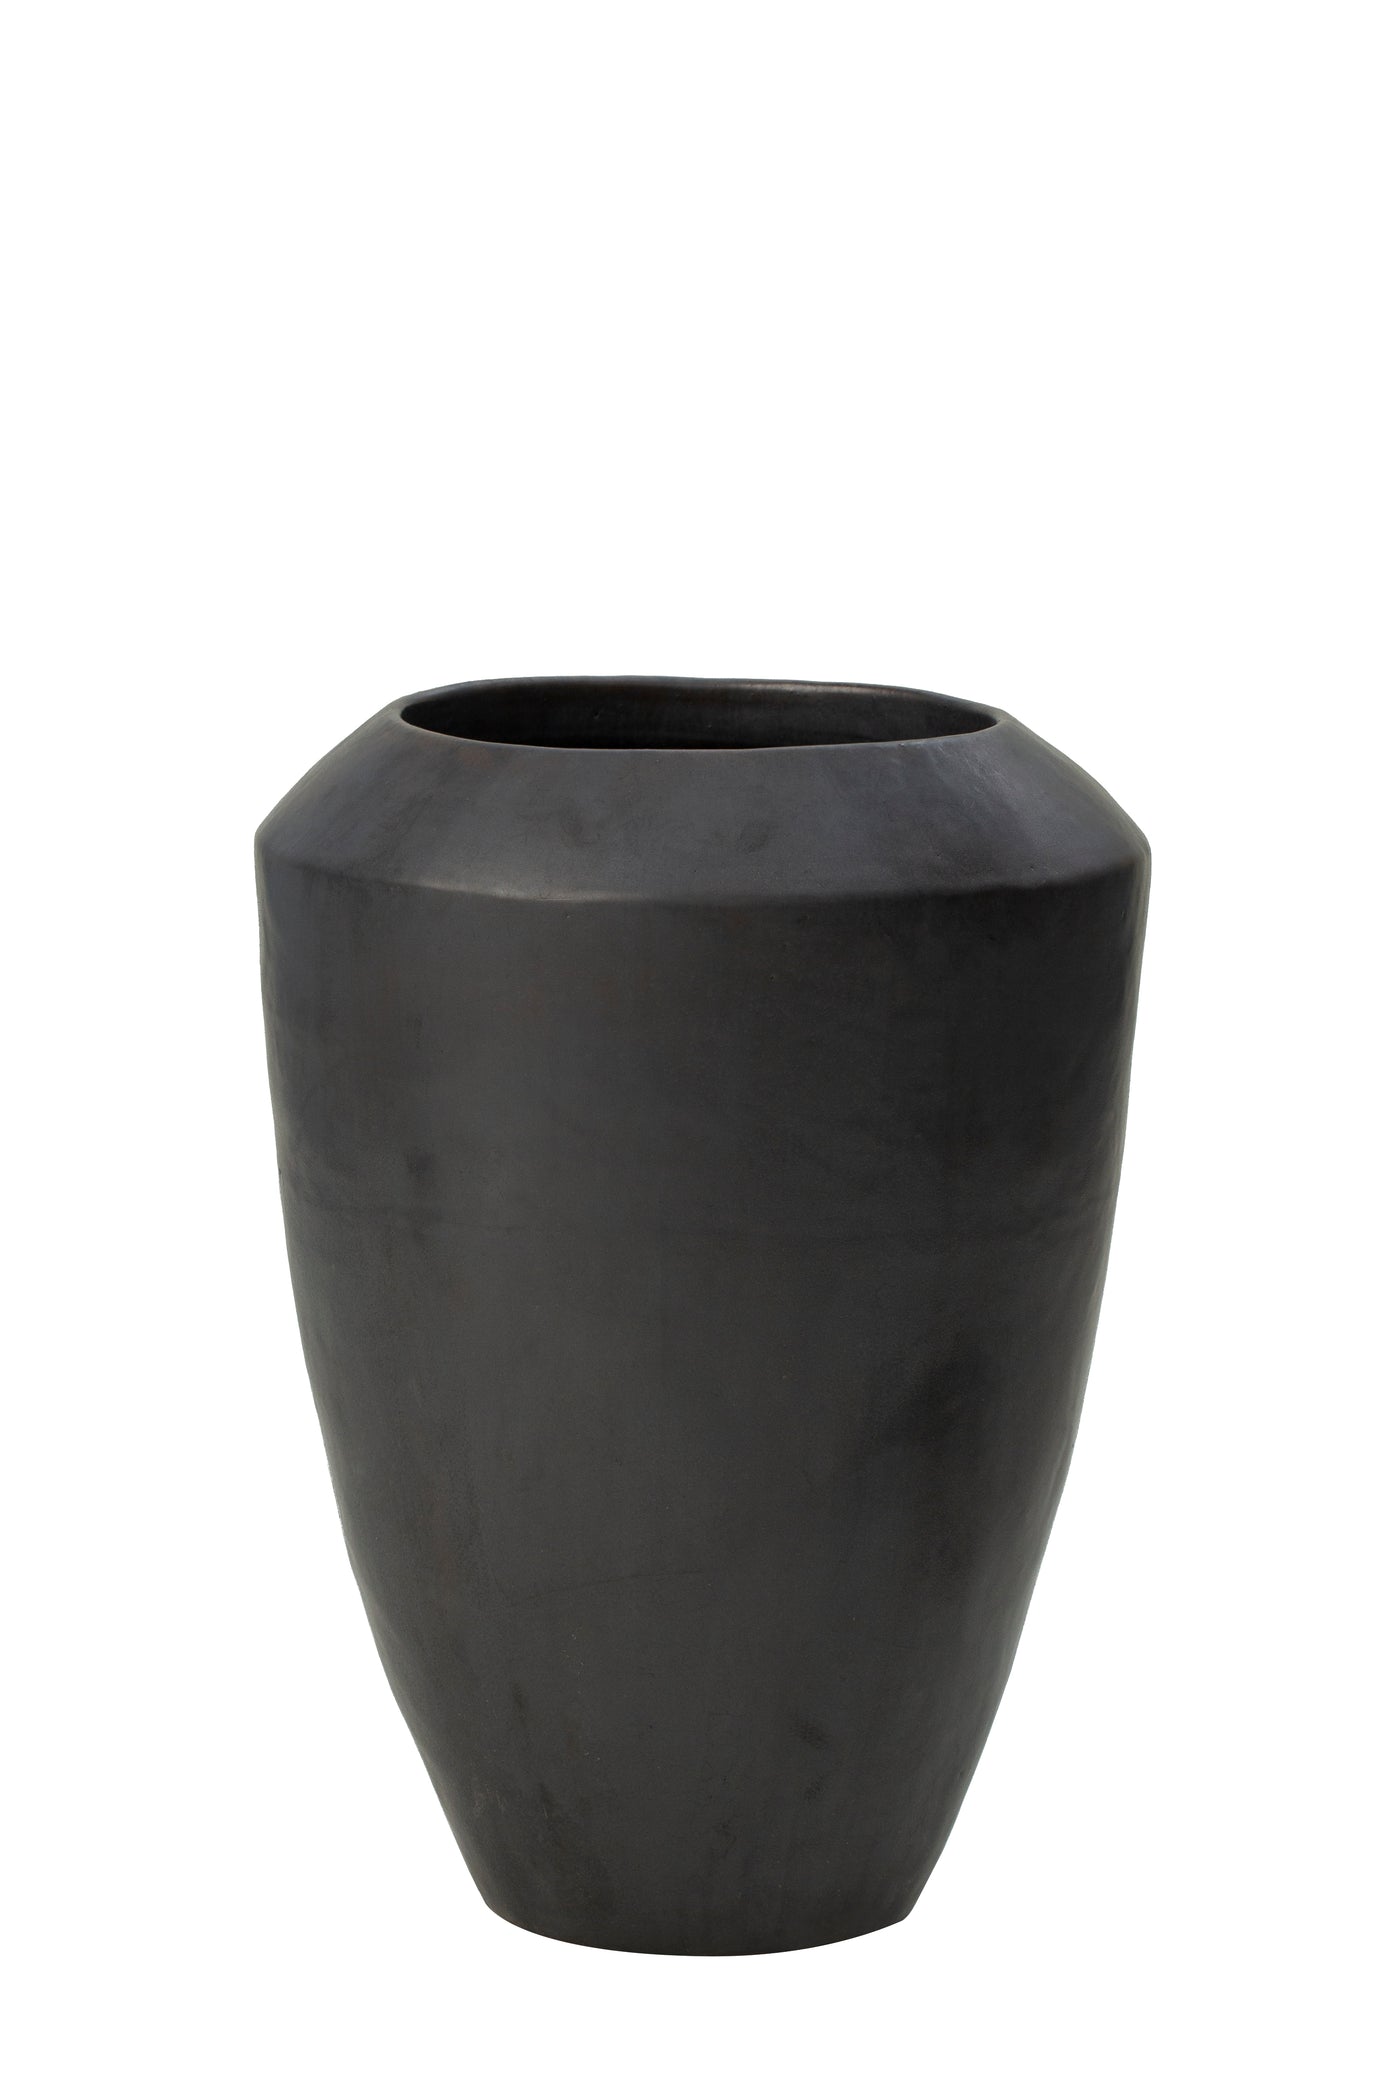 Ghiveci palnte D50xH68 cm ceramic Coppa, antracit semilucios